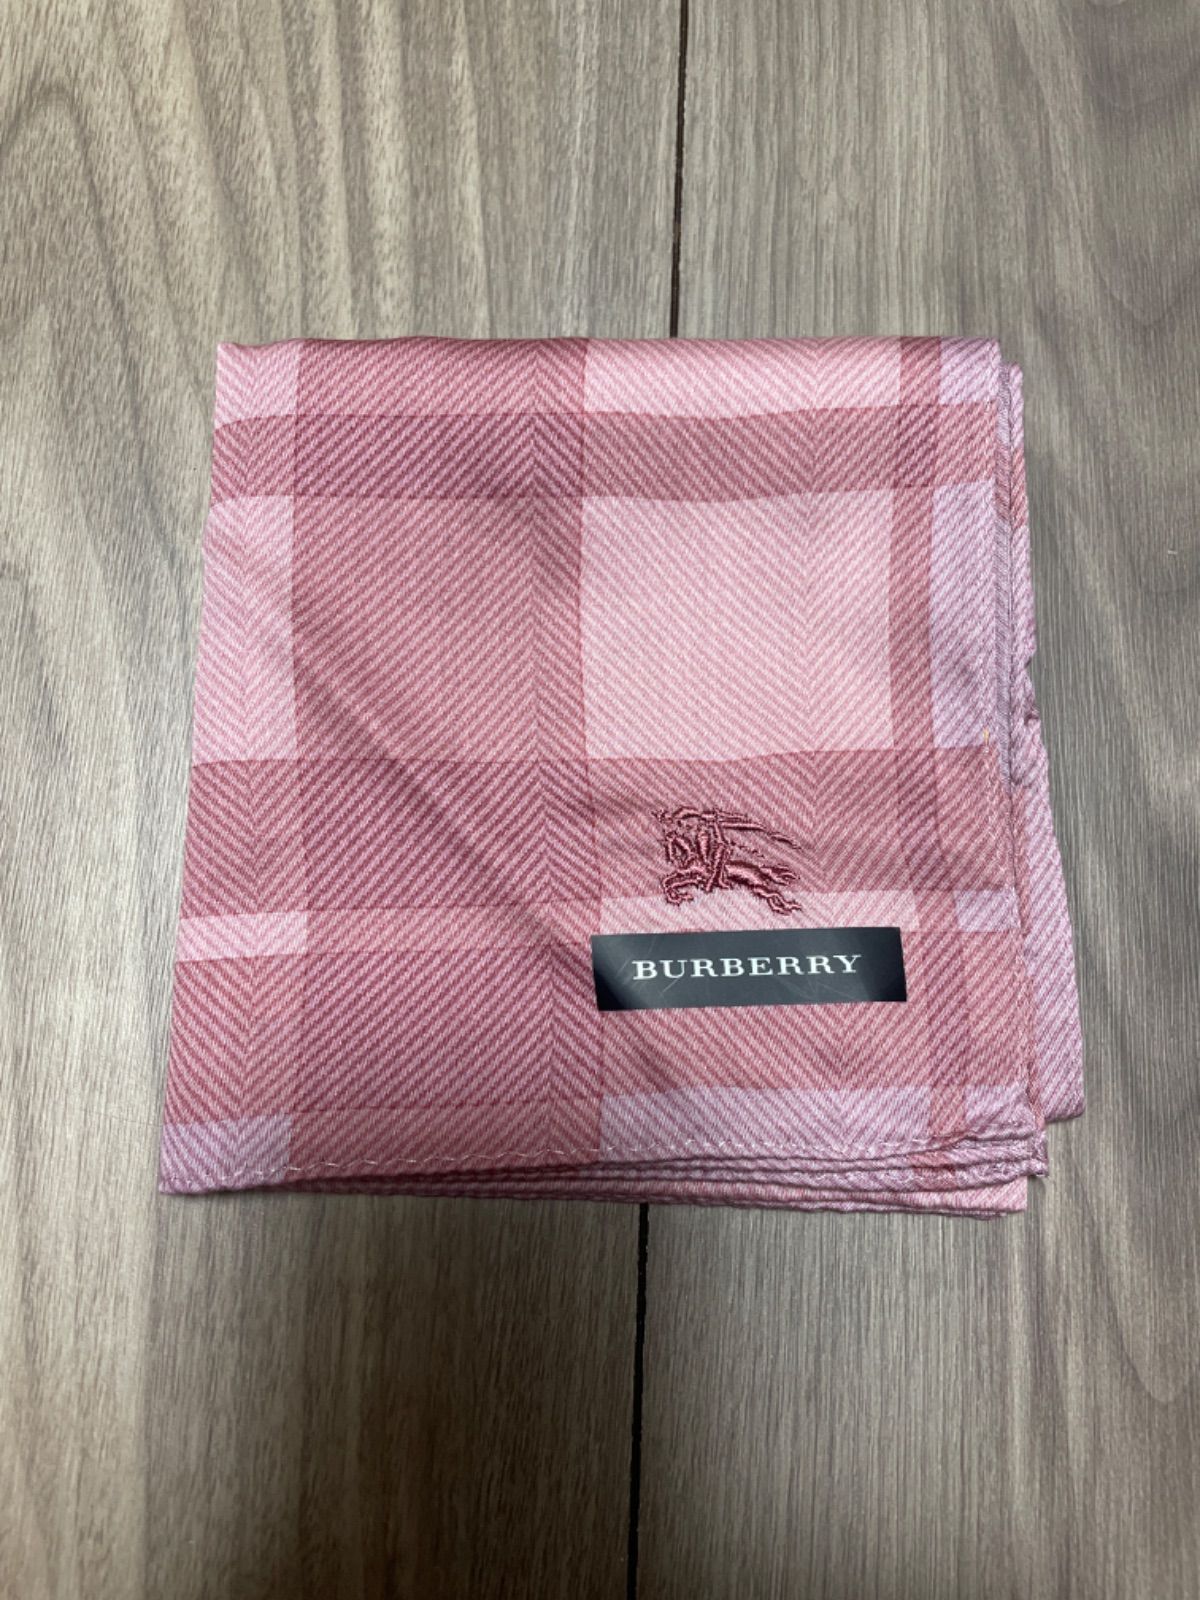 バーバリー ハンカチ ピンク 新品 Layla⭐︎shop メルカリ